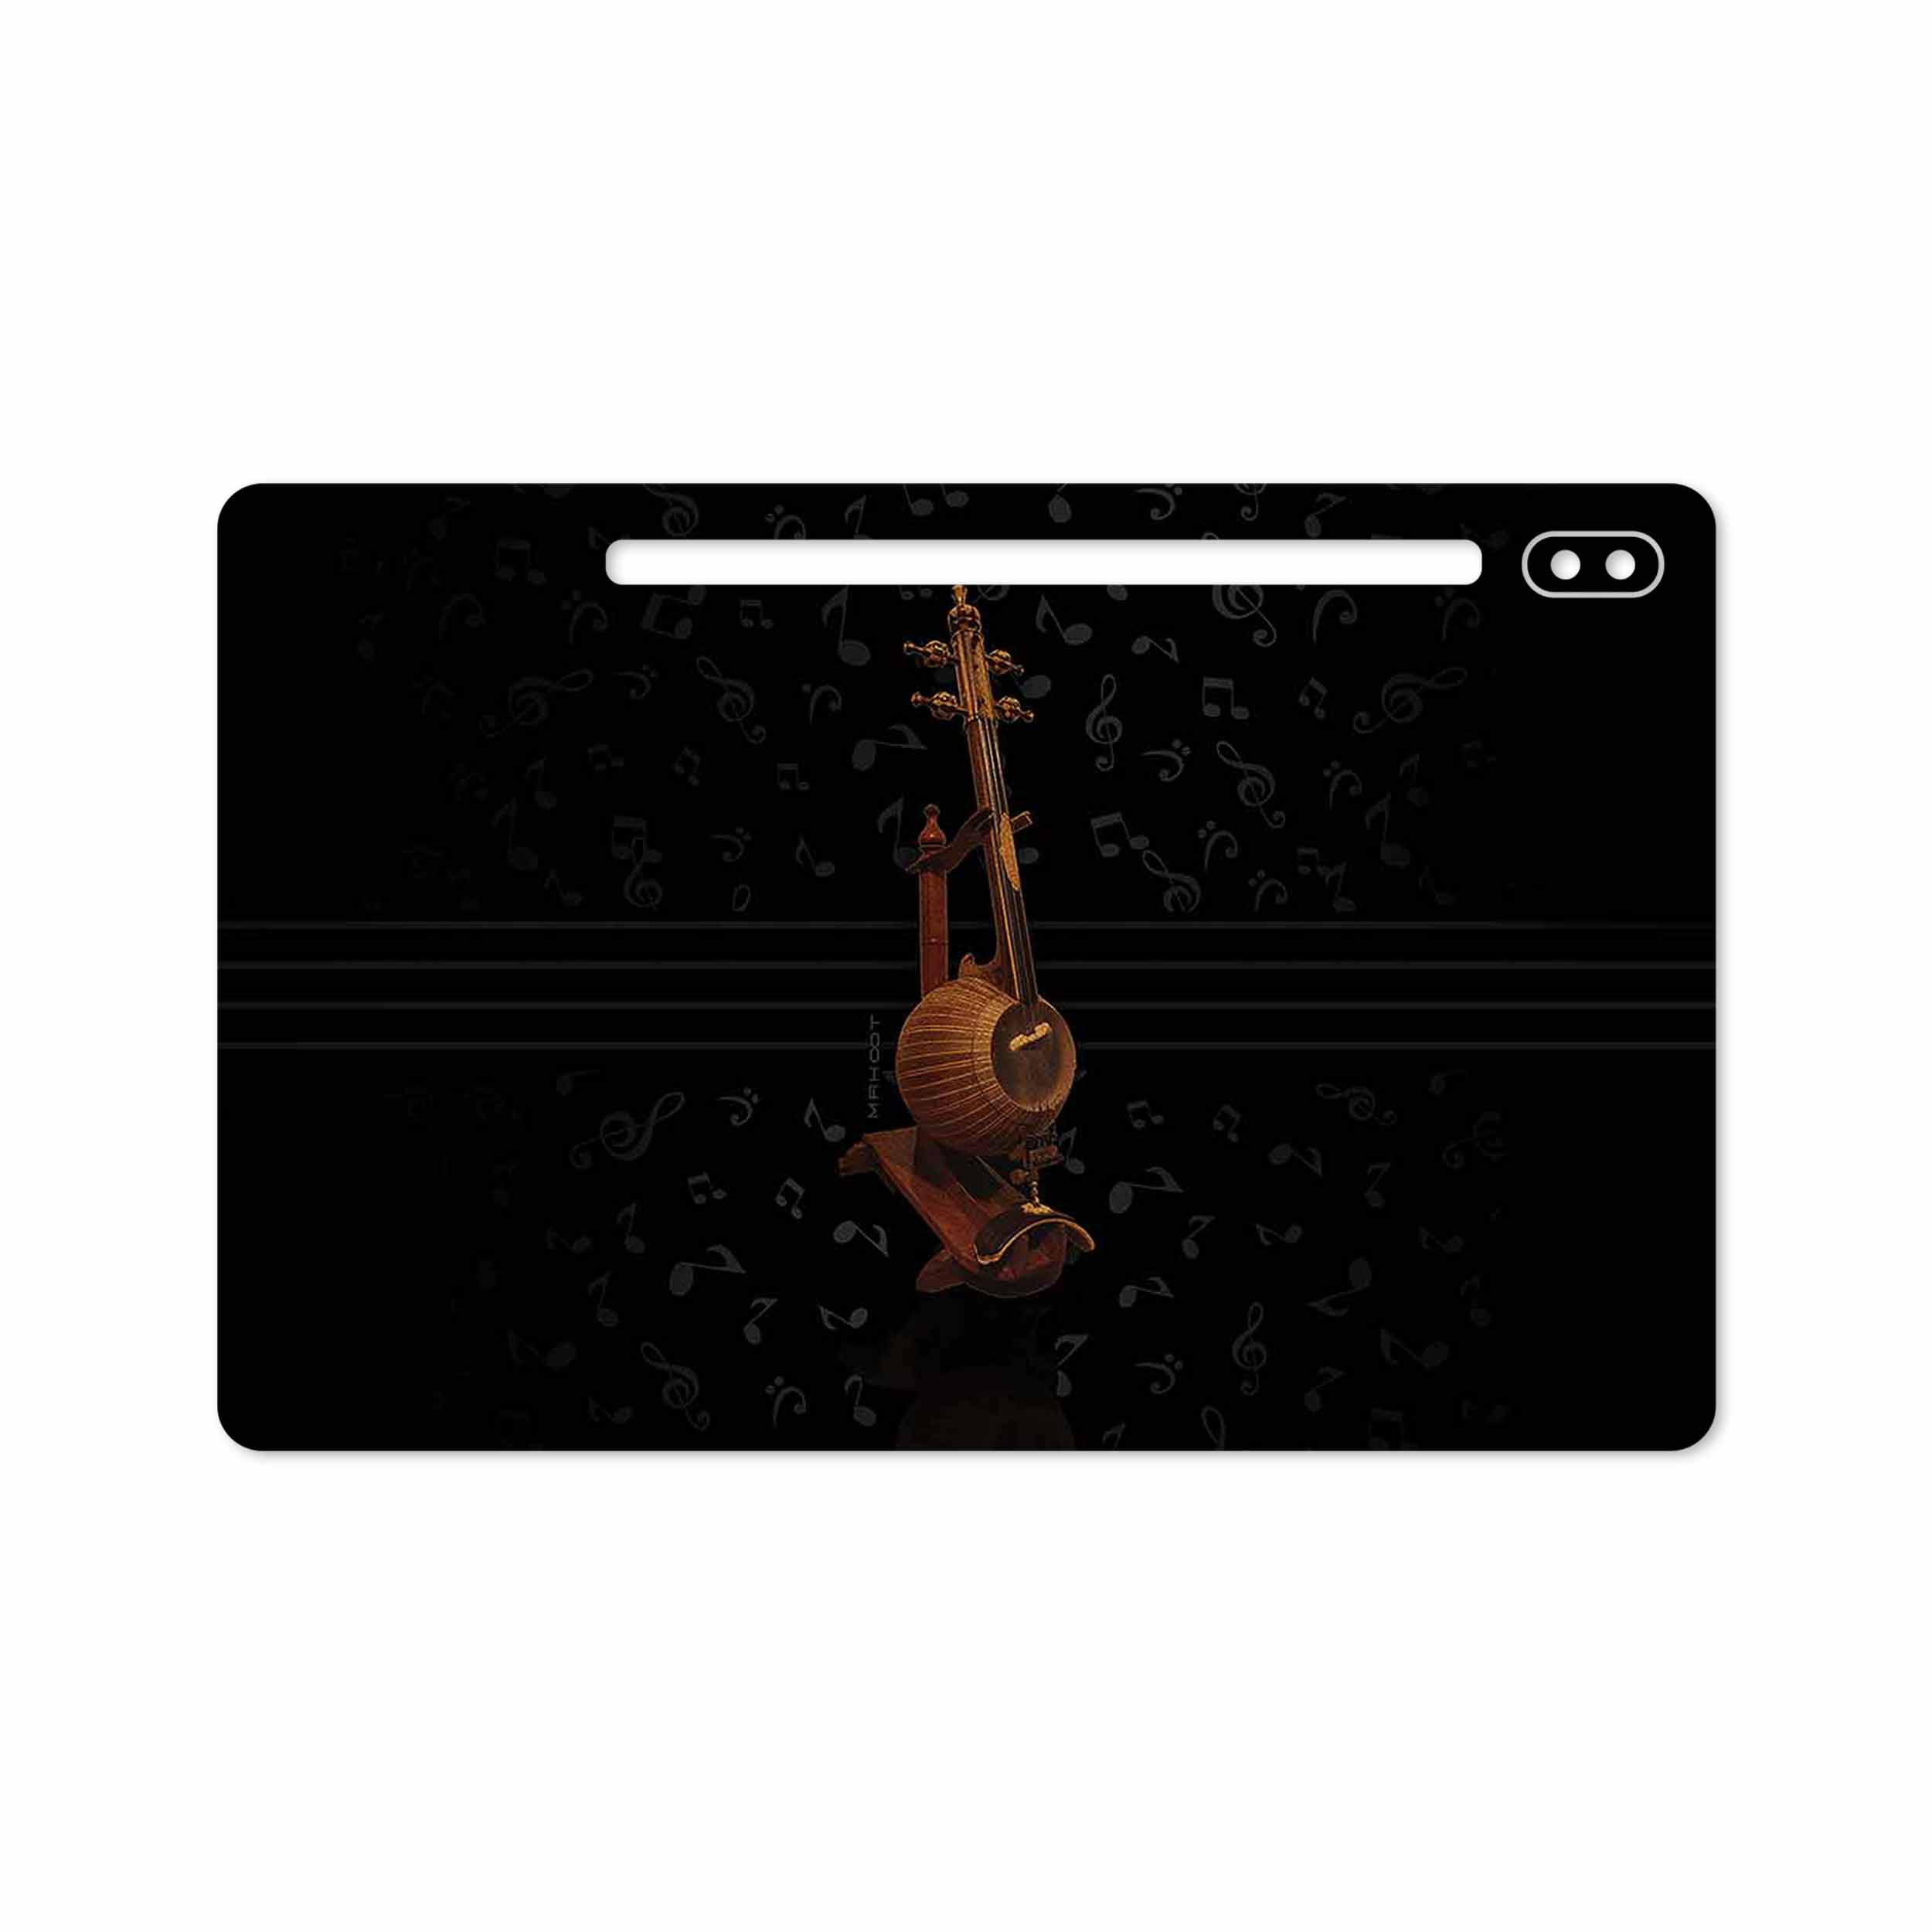 برچسب پوششی ماهوت مدل Persian Fiddle Instrument مناسب برای تبلت سامسونگ Galaxy Tab S6 2019 SM-T860